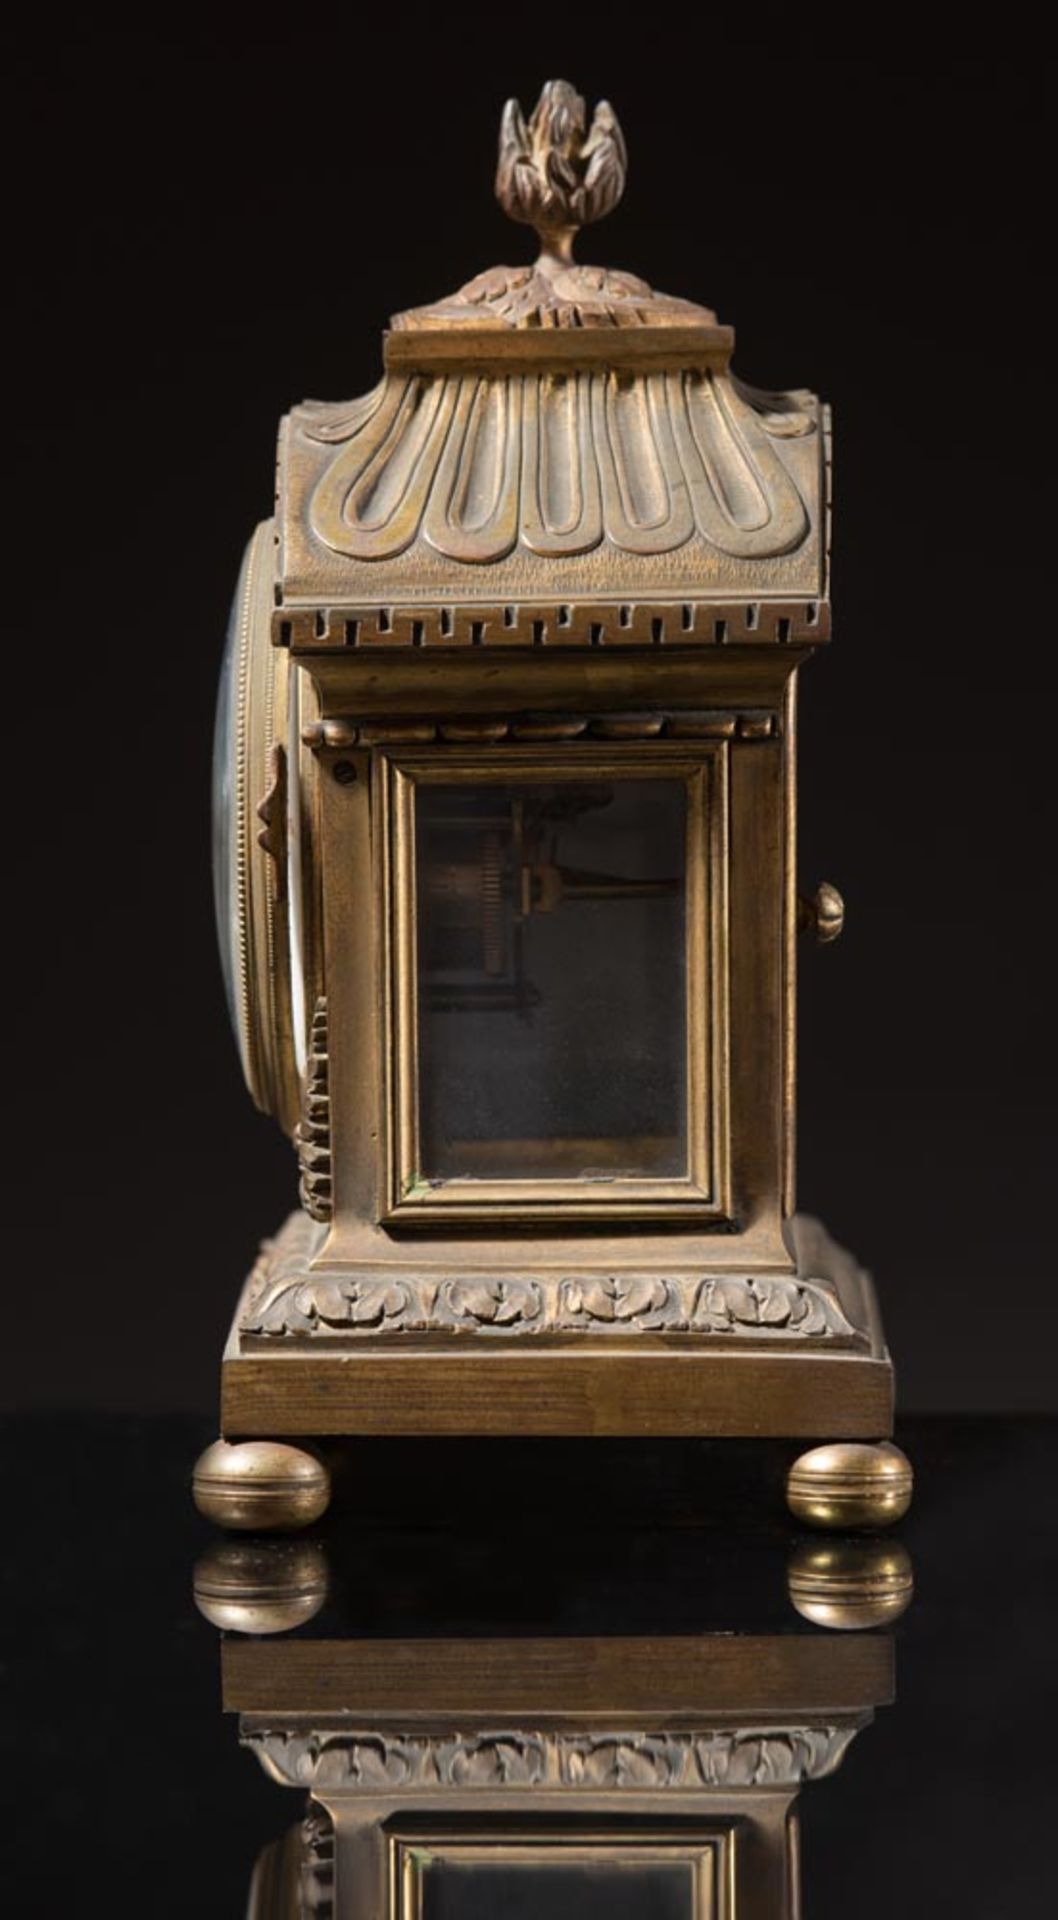 G. Megnin, gilt bronze table clock, France, 19th Century - Image 2 of 2